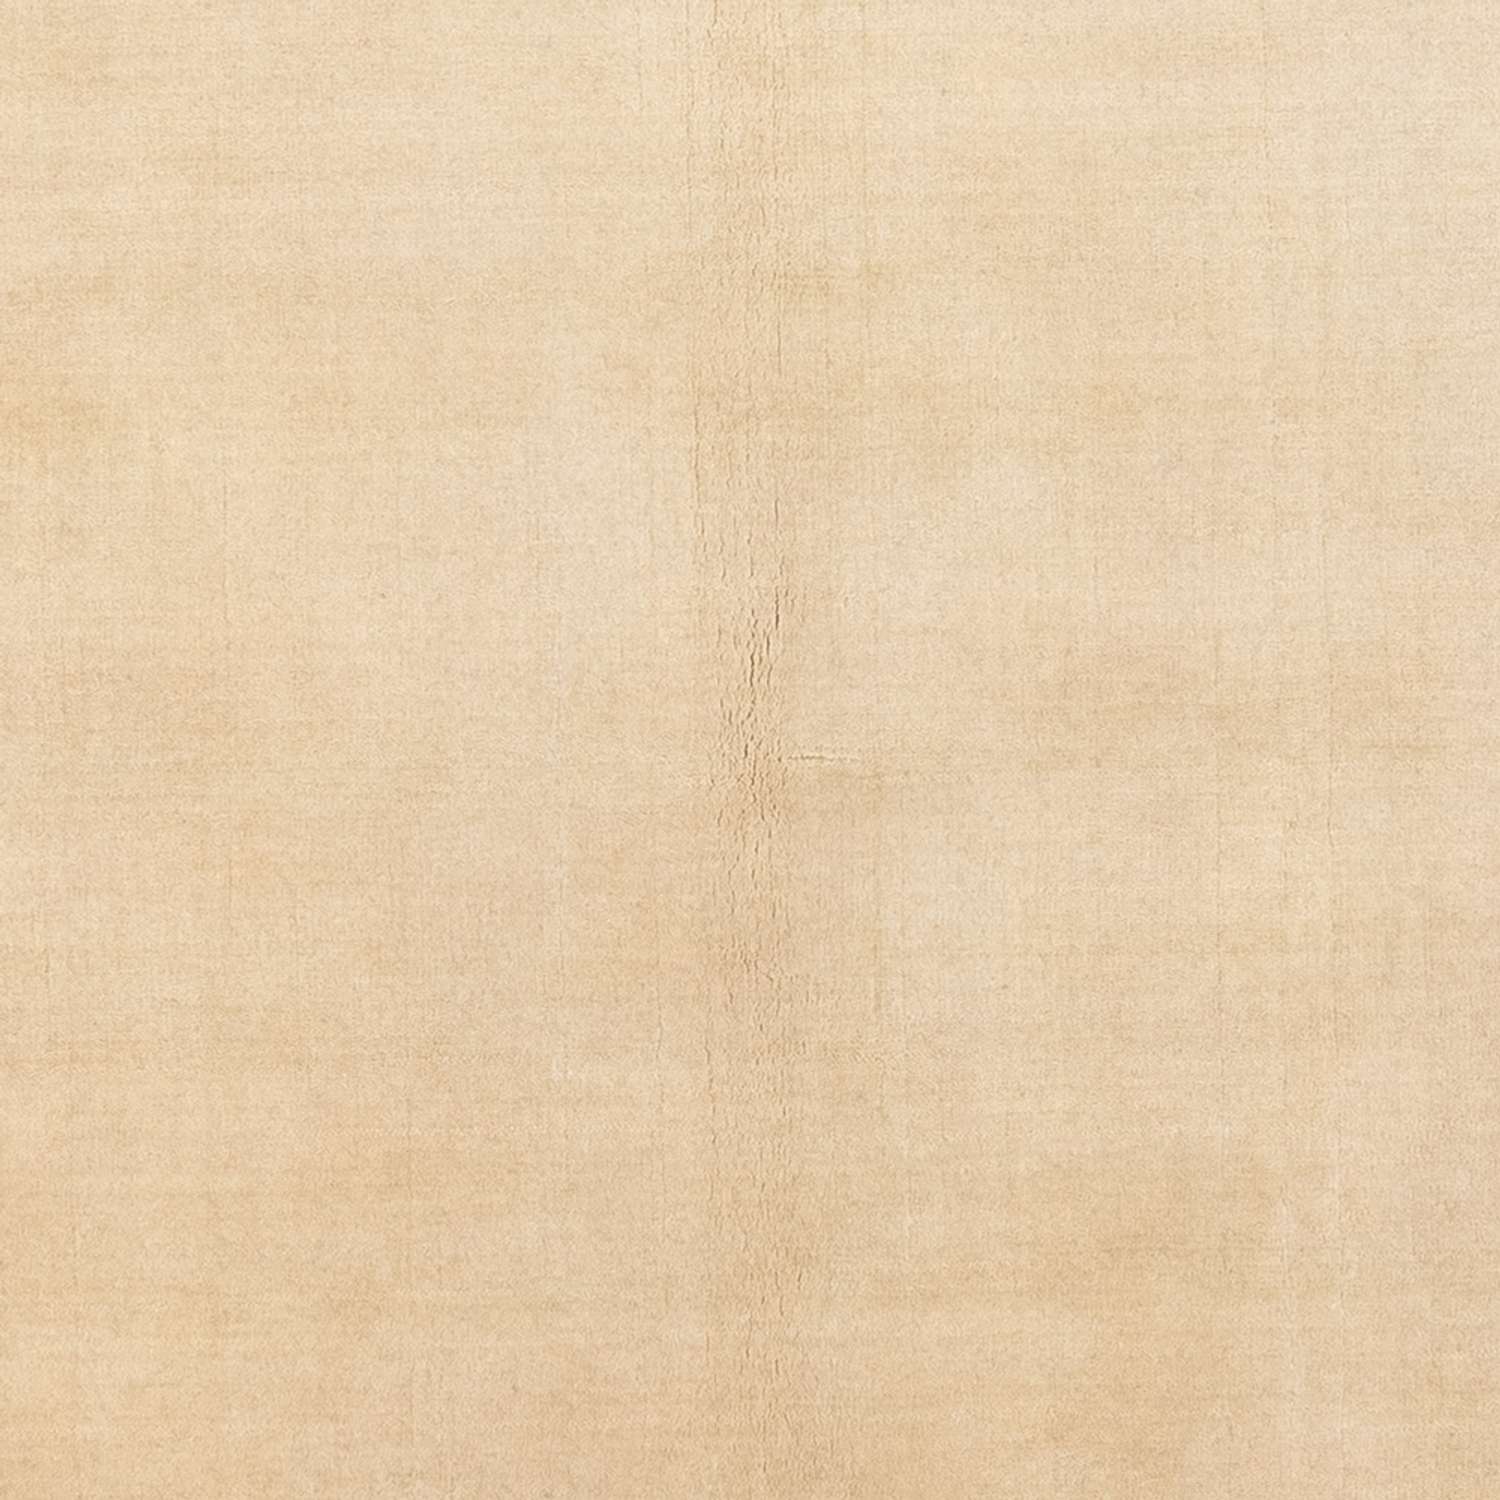 Gabbeh teppe - Loribaft Softy - 182 x 125 cm - lys beige